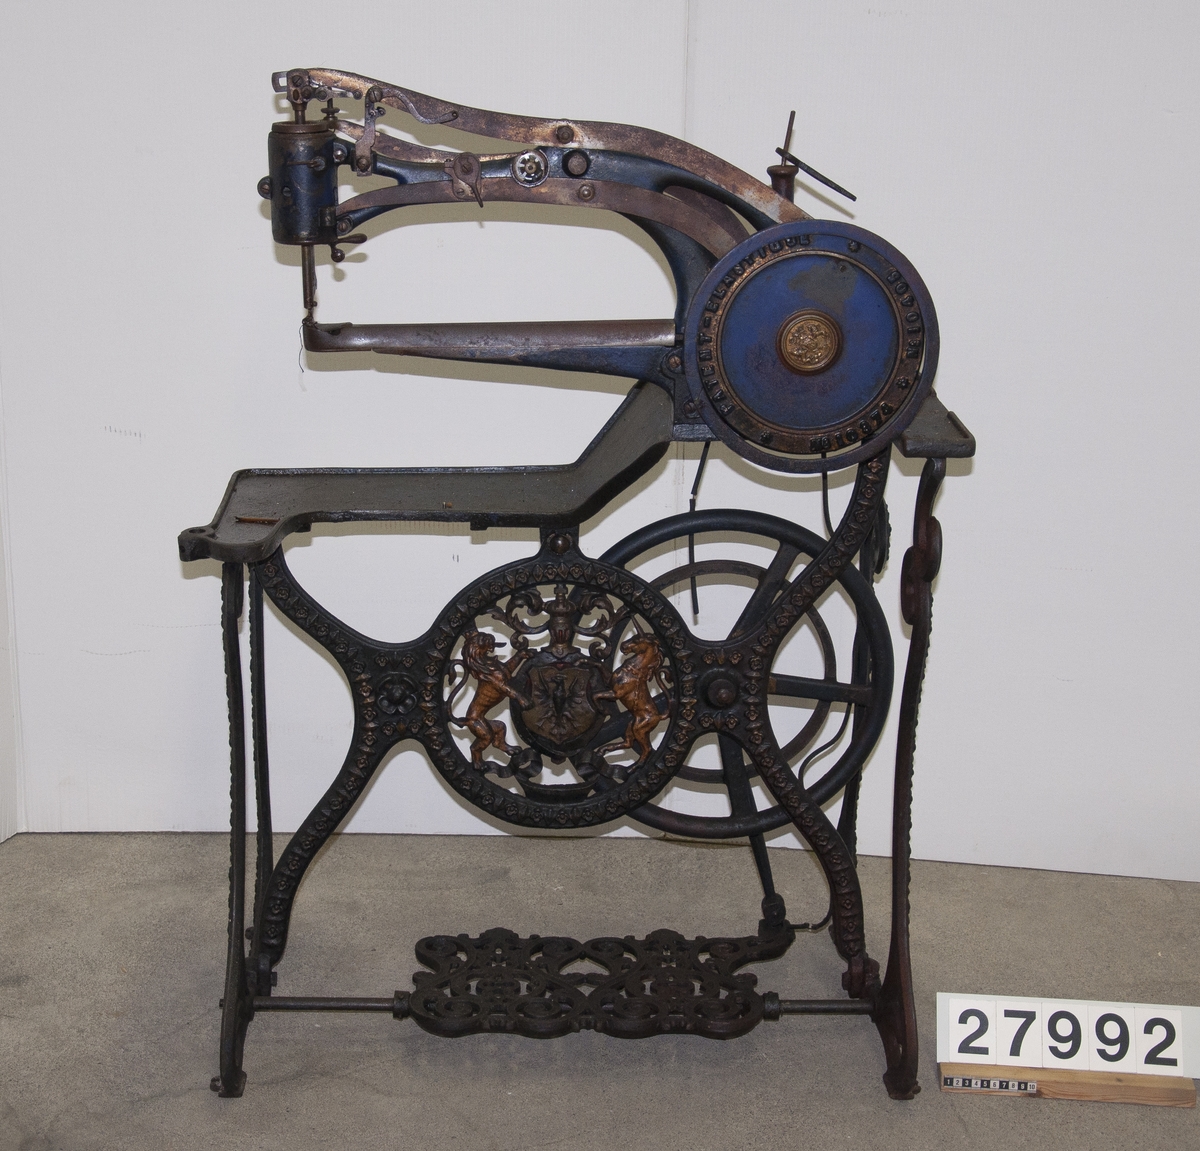 Symaskin, "Patent Elastique" för skonåtling, hand- och trampdriven, på stativ av järn.